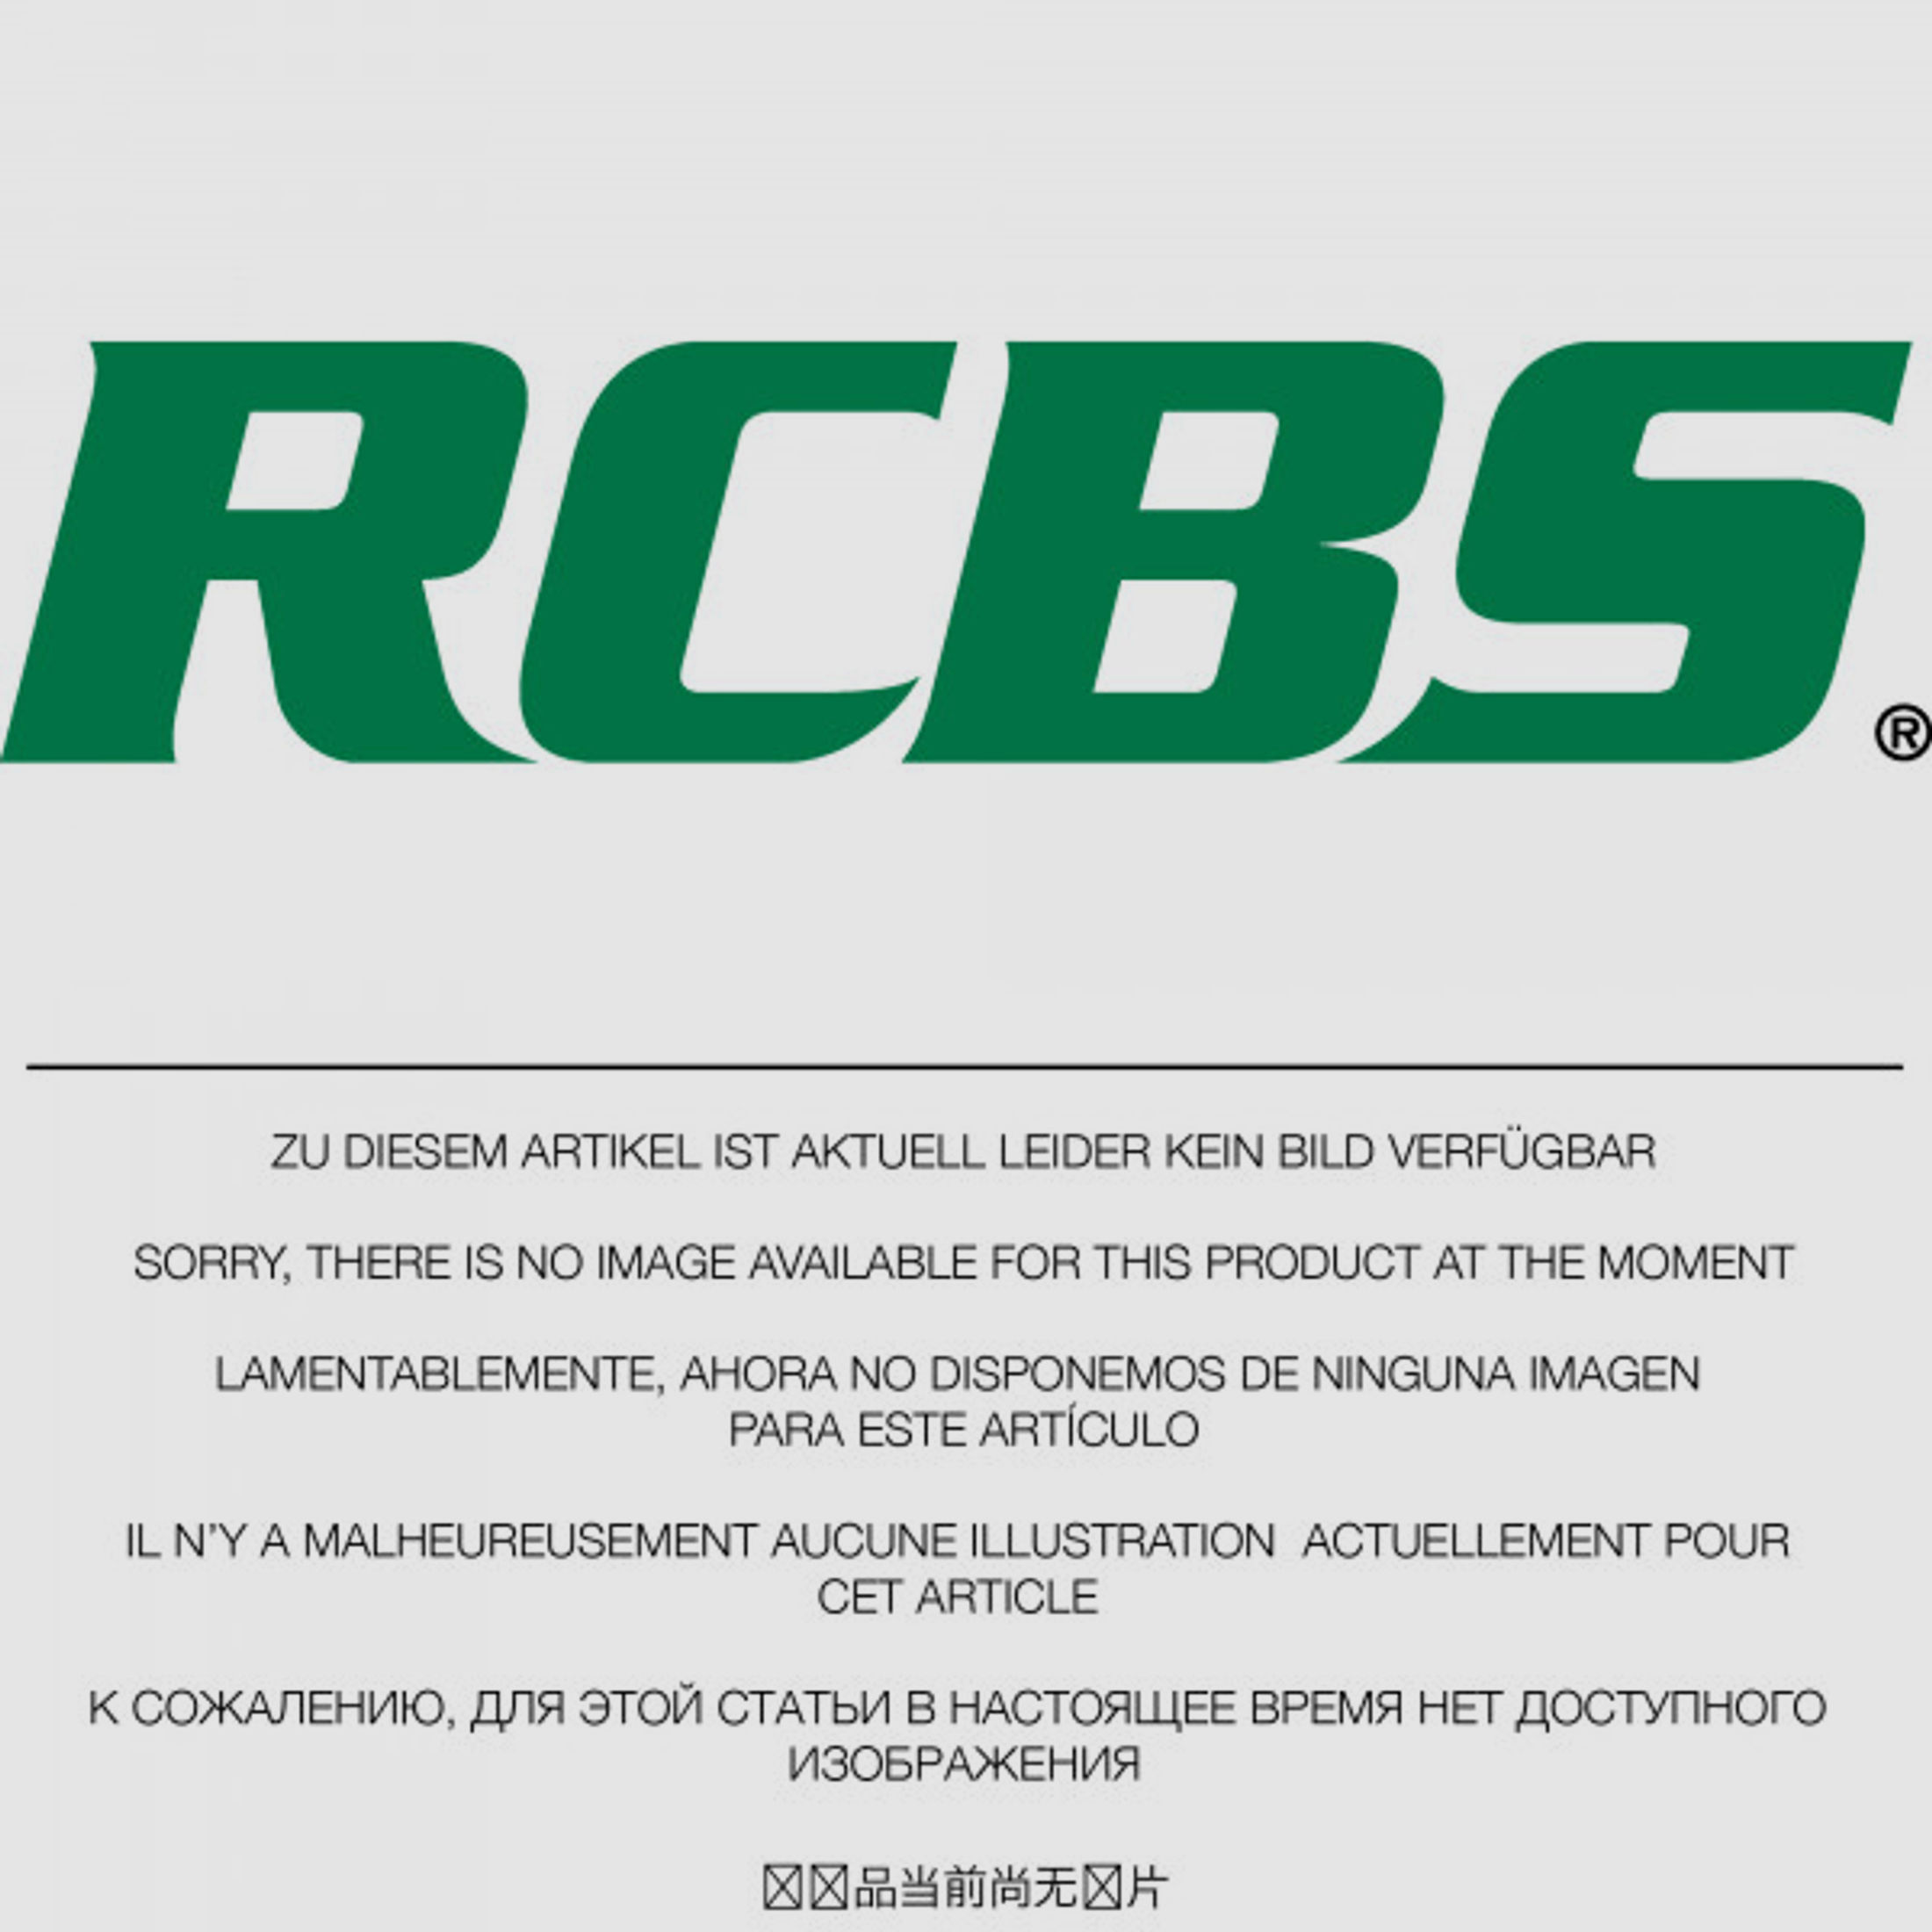 RCBS Lube-A-Matic Top Punch Geschoss Setzstempel Nr. 556 #85556